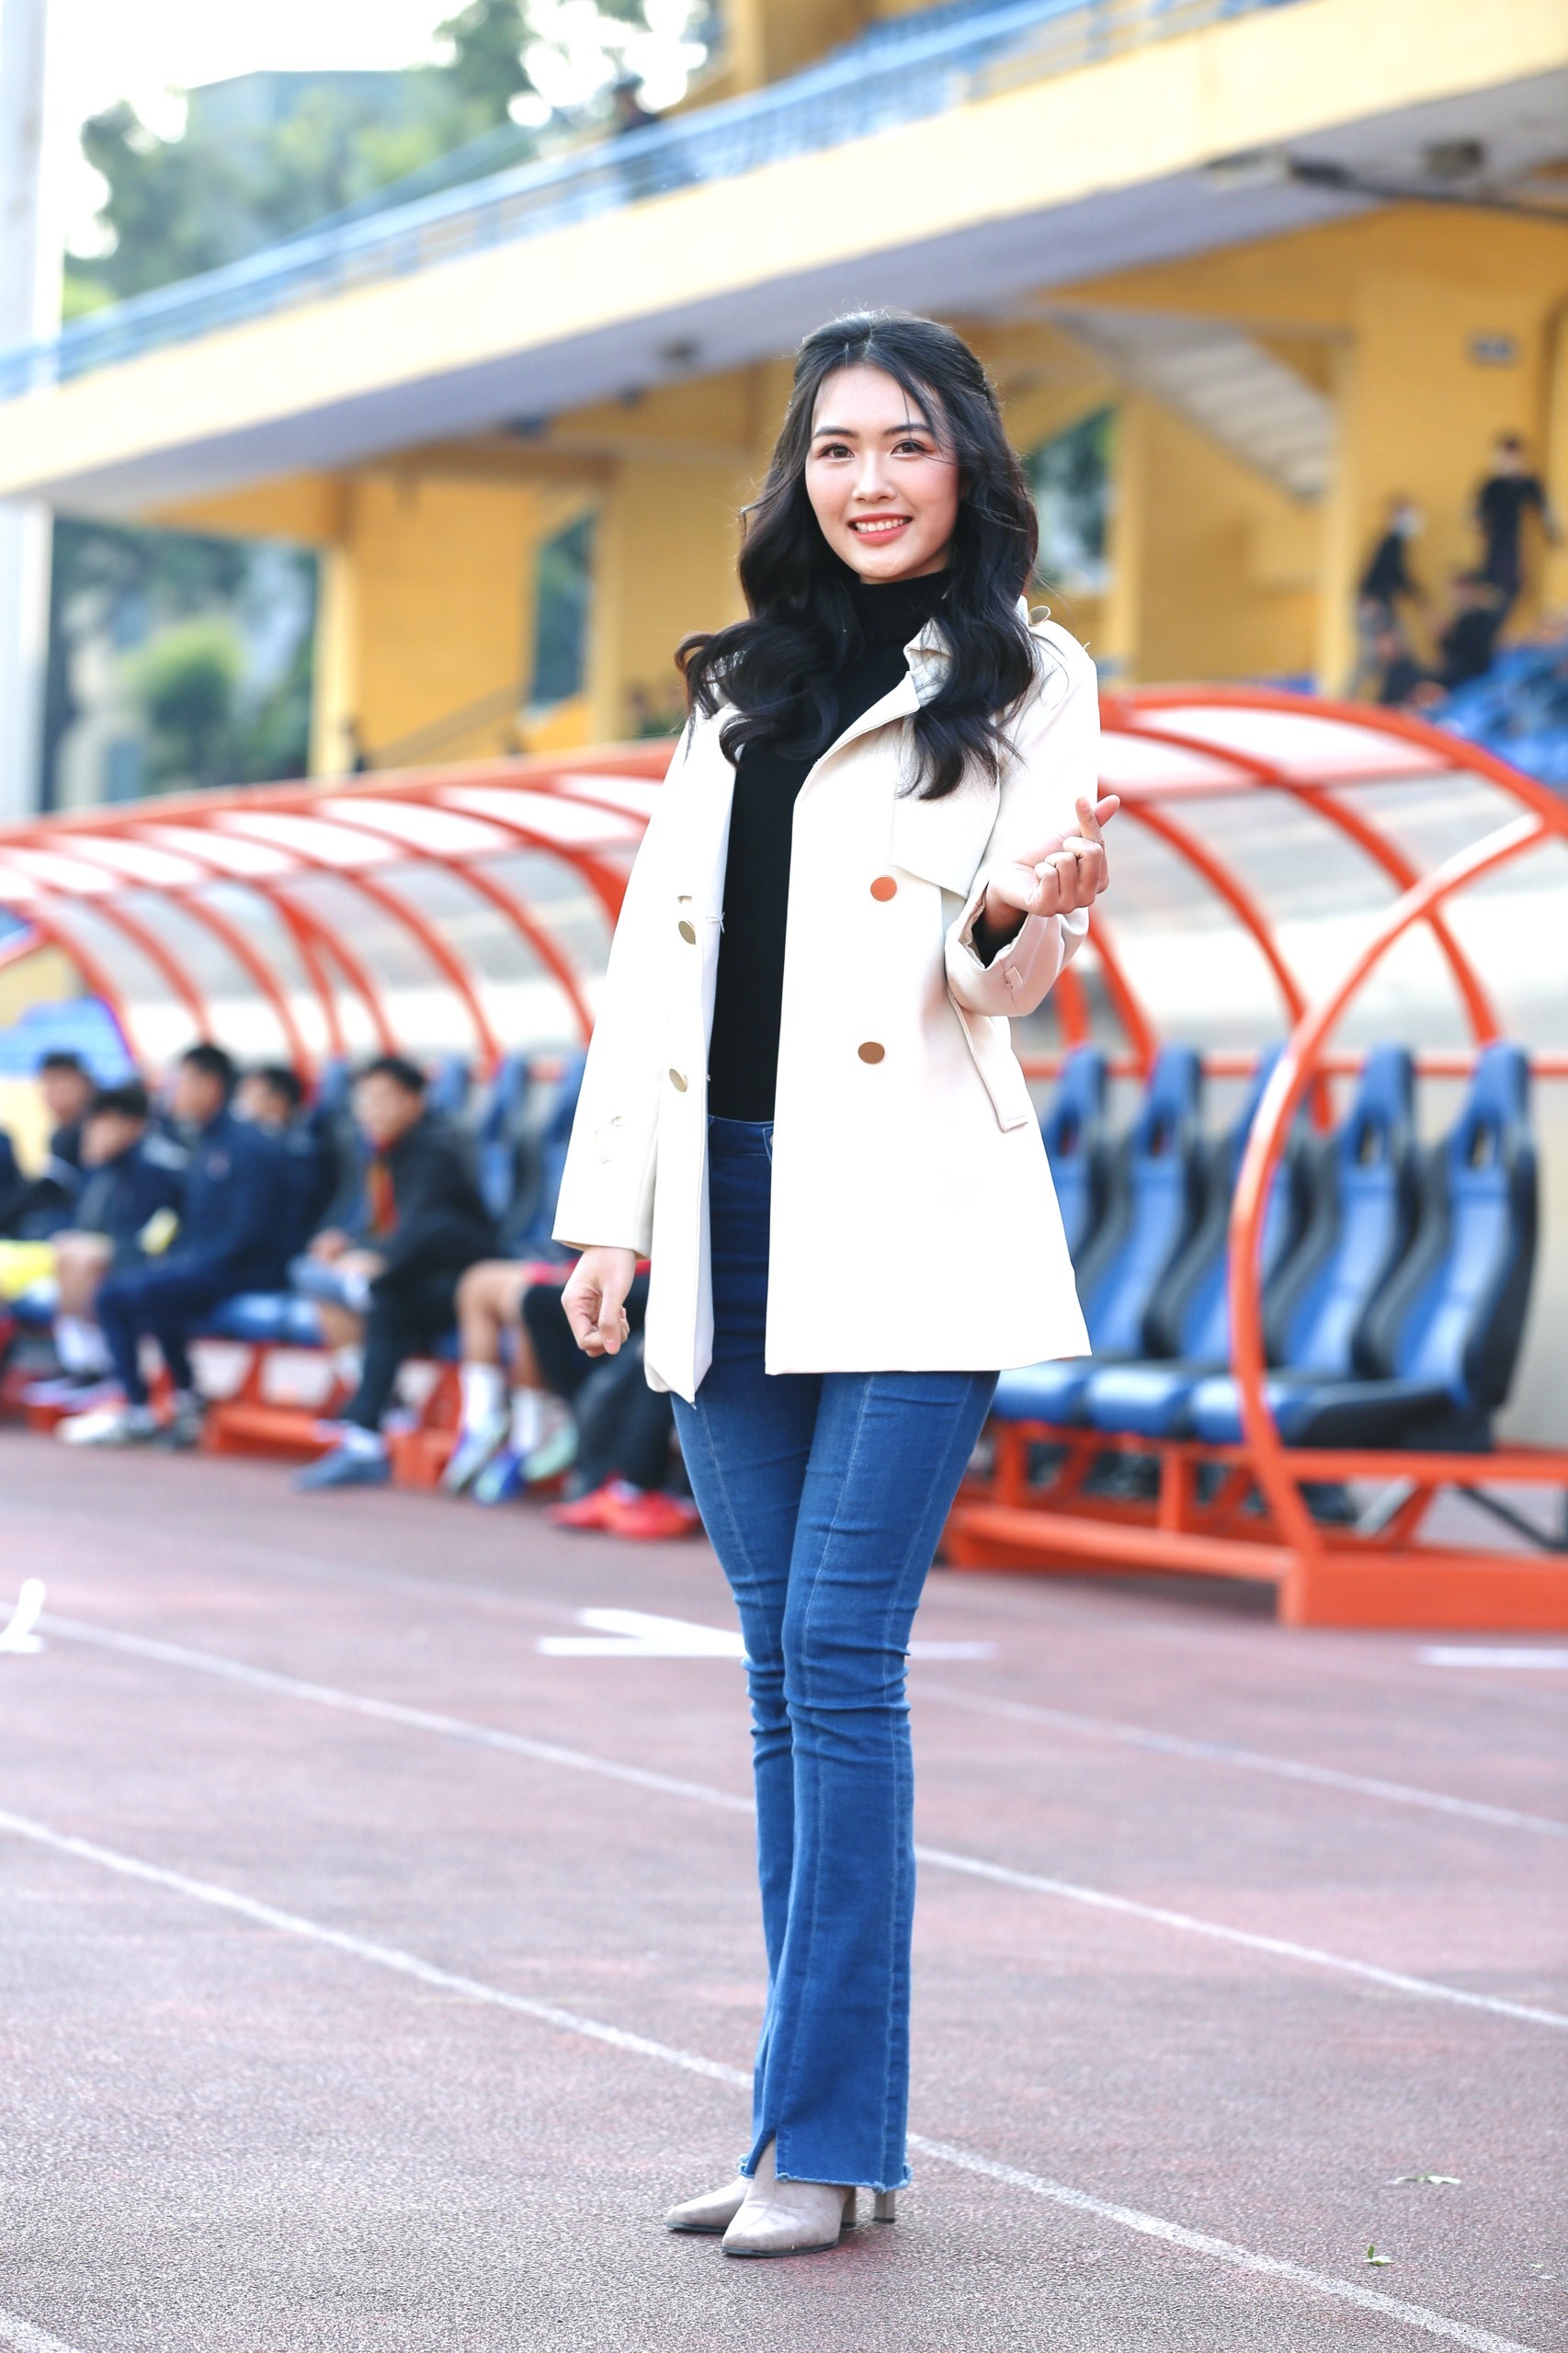 Hoa hậu Đỗ Mỹ Linh đến sân Hàng Đẫy cổ vũ đội bóng của ông xã tranh Siêu cúp - Ảnh 13.